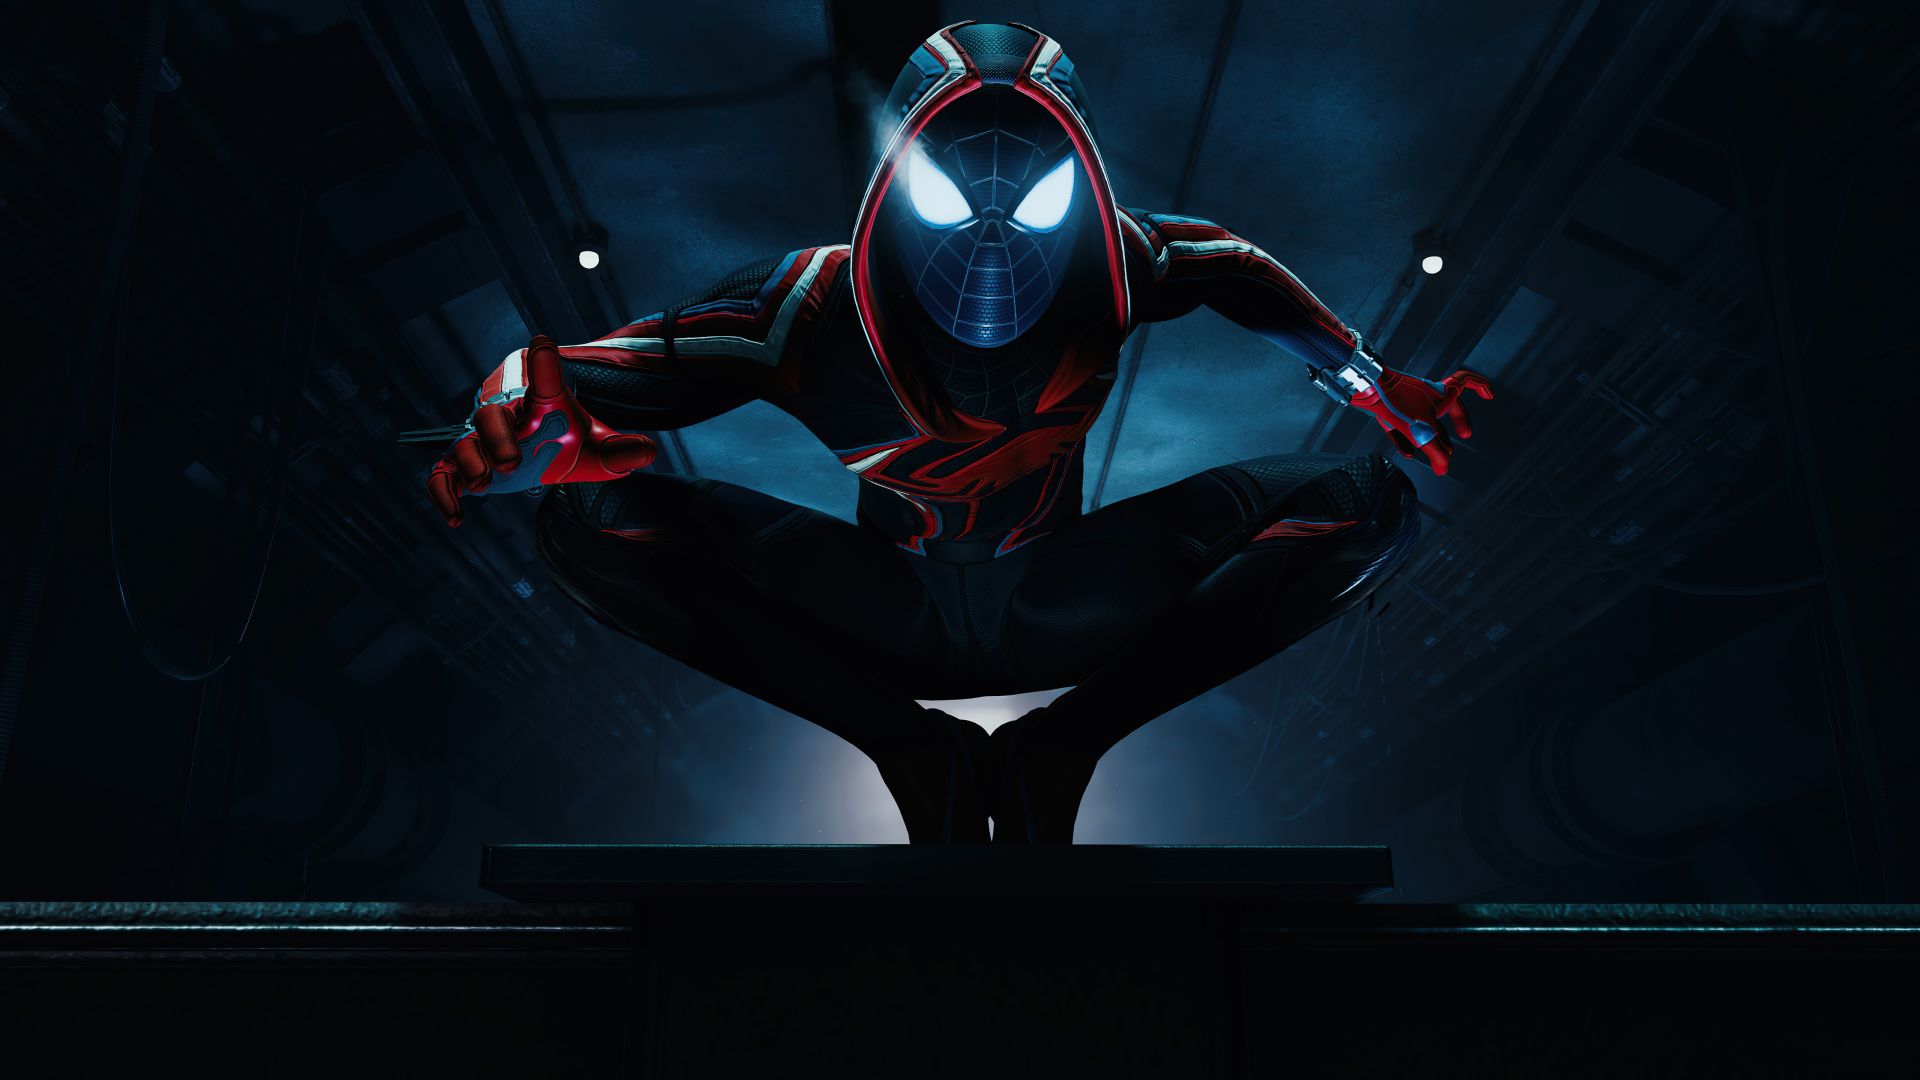 Bộ hình nền cho Marvel’s Spider Man Desktop là tuyệt vời cho những người yêu thích trò chơi Spider-Man. Với các hình ảnh đẹp, rõ nét và sắc nét, bộ ảnh nền này sẽ làm tăng cảm hứng cho bạn khi chơi game, đồng thời đưa bạn đến những cuộc phiêu lưu mới với siêu anh hùng yêu thích của mình. 